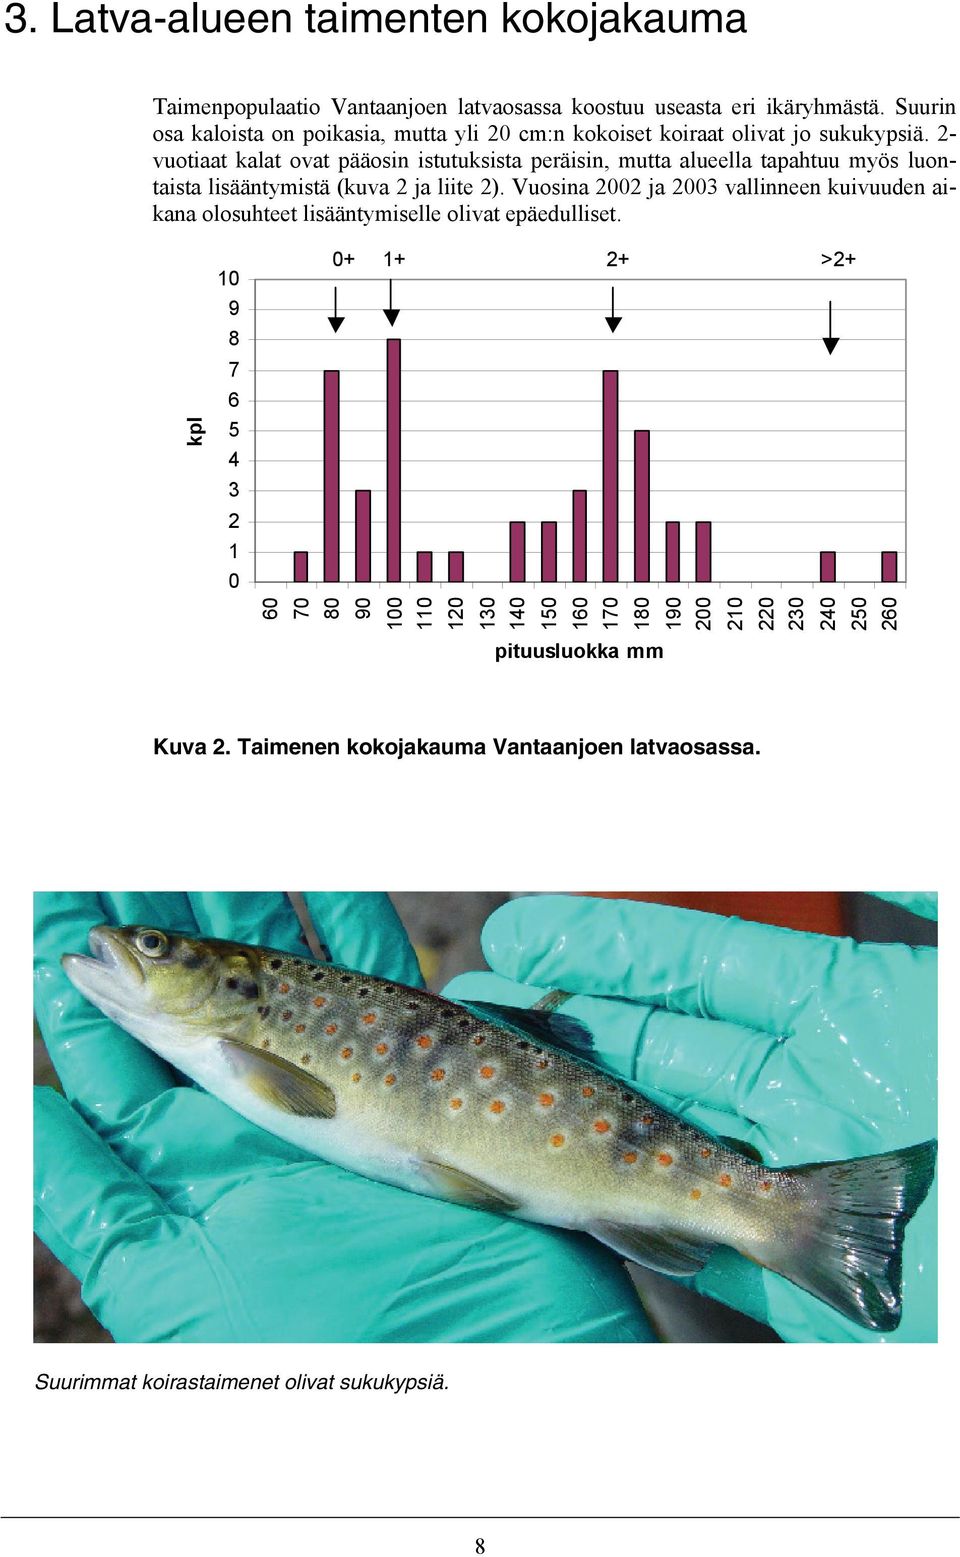 2- vuotiaat kalat ovat pääosin istutuksista peräisin, mutta alueella tapahtuu myös luontaista lisääntymistä (kuva 2 ja liite 2).